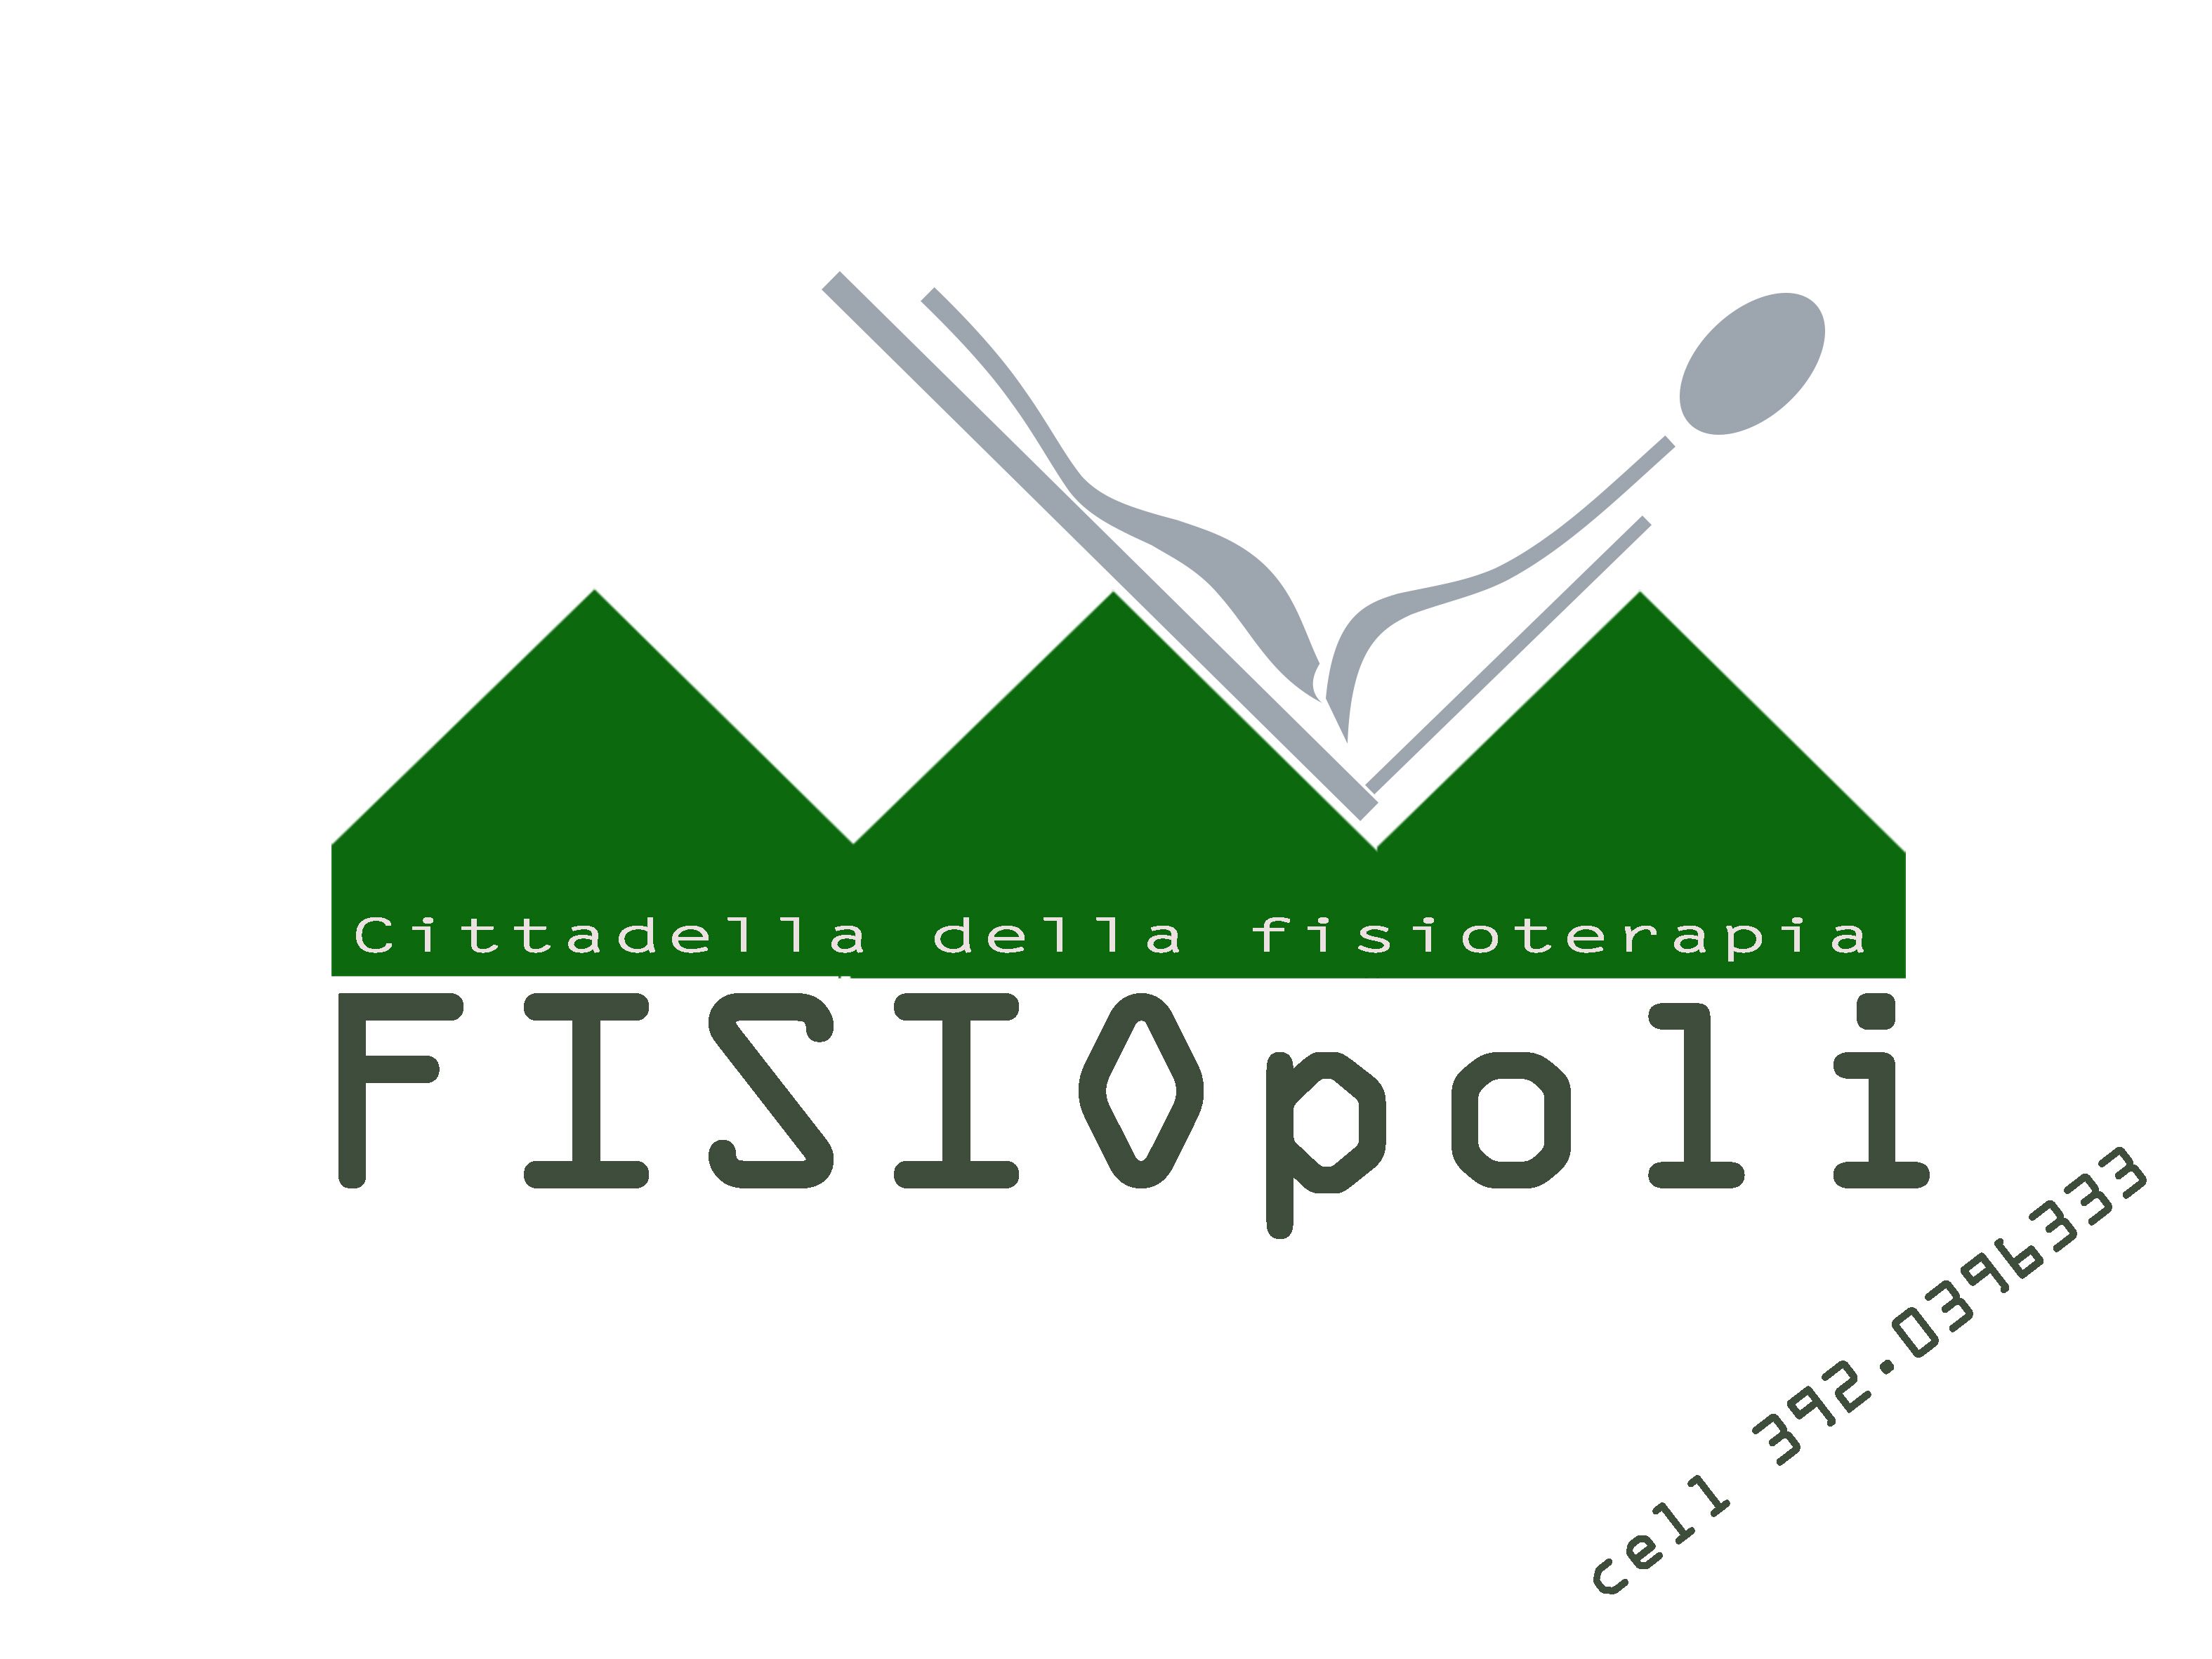 Fisiopoli: la cittadella della fisioterapia a Novara